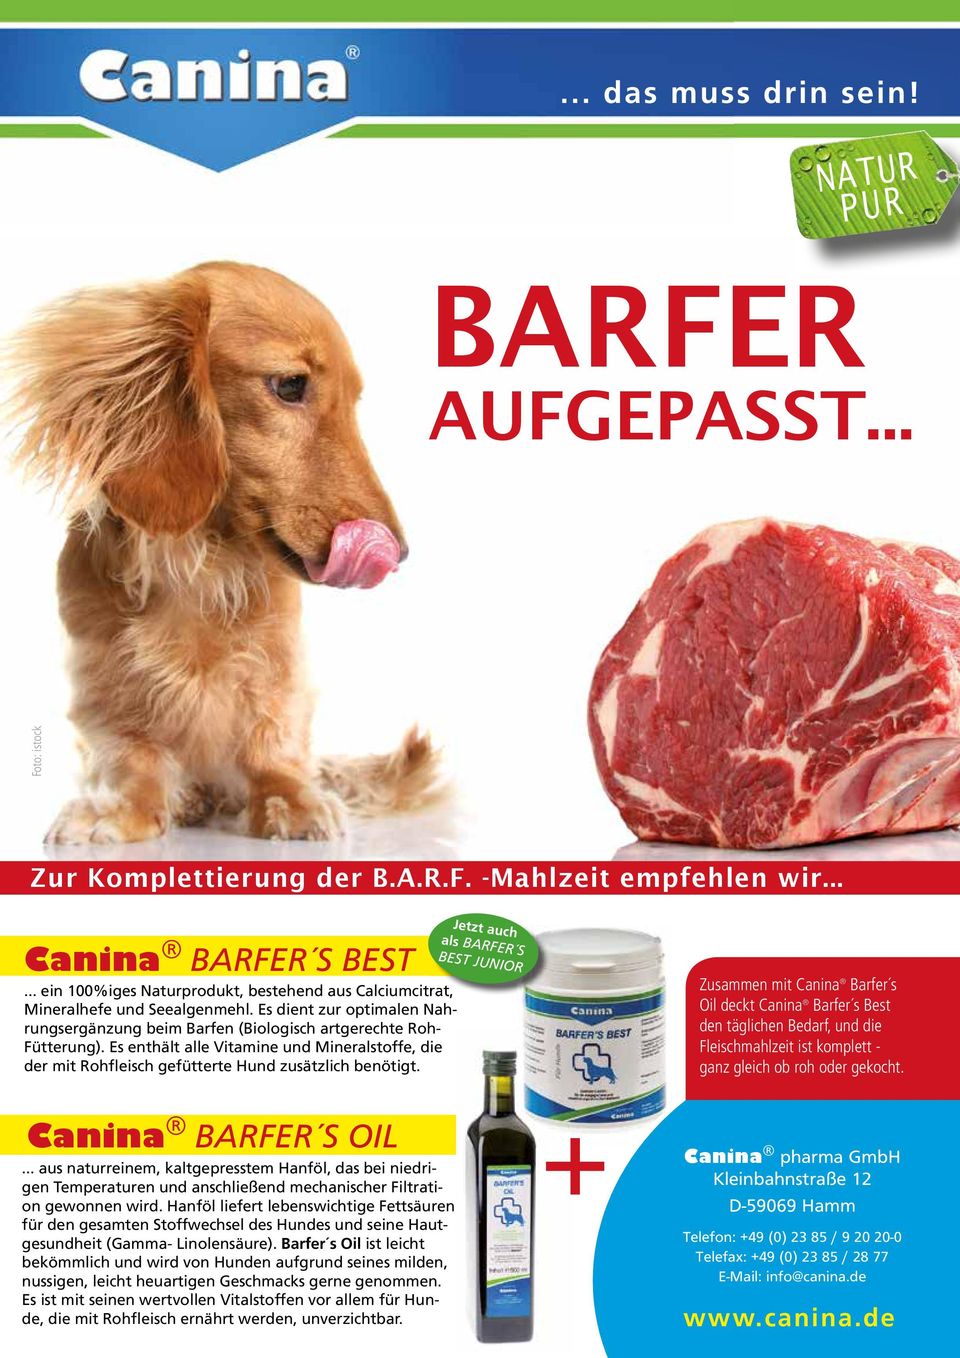 Es enthält alle Vitamine und Mineralstoffe, die der mit Rohfleisch gefütterte Hund zusätzlich benötigt.